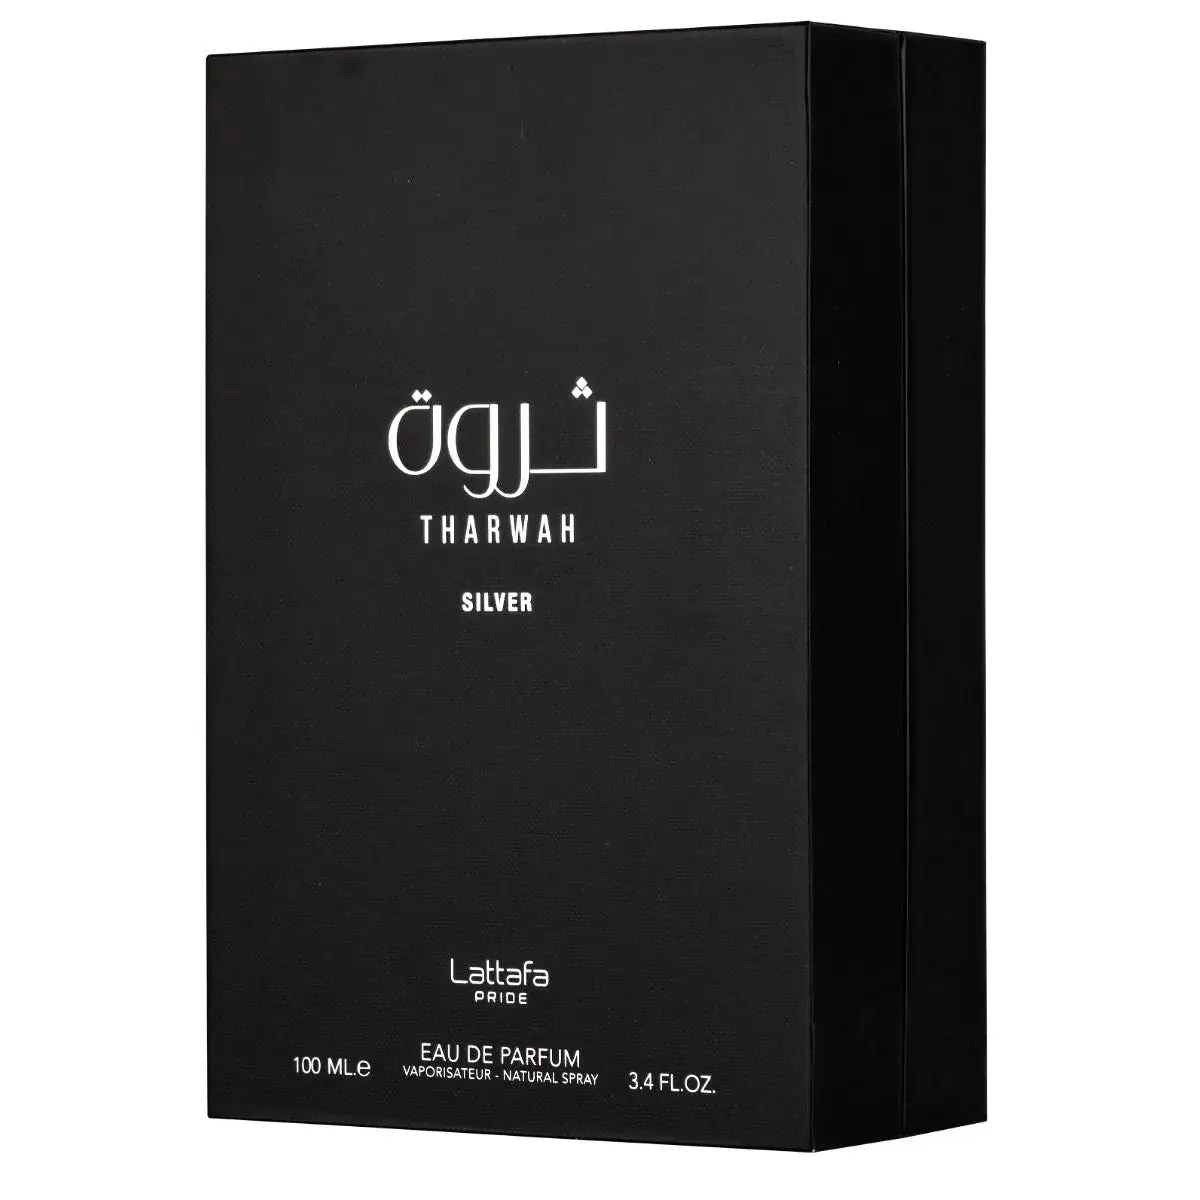 Tharwah Silver Perfume / Eau De Parfum 100Ml By Lattafa Pride 